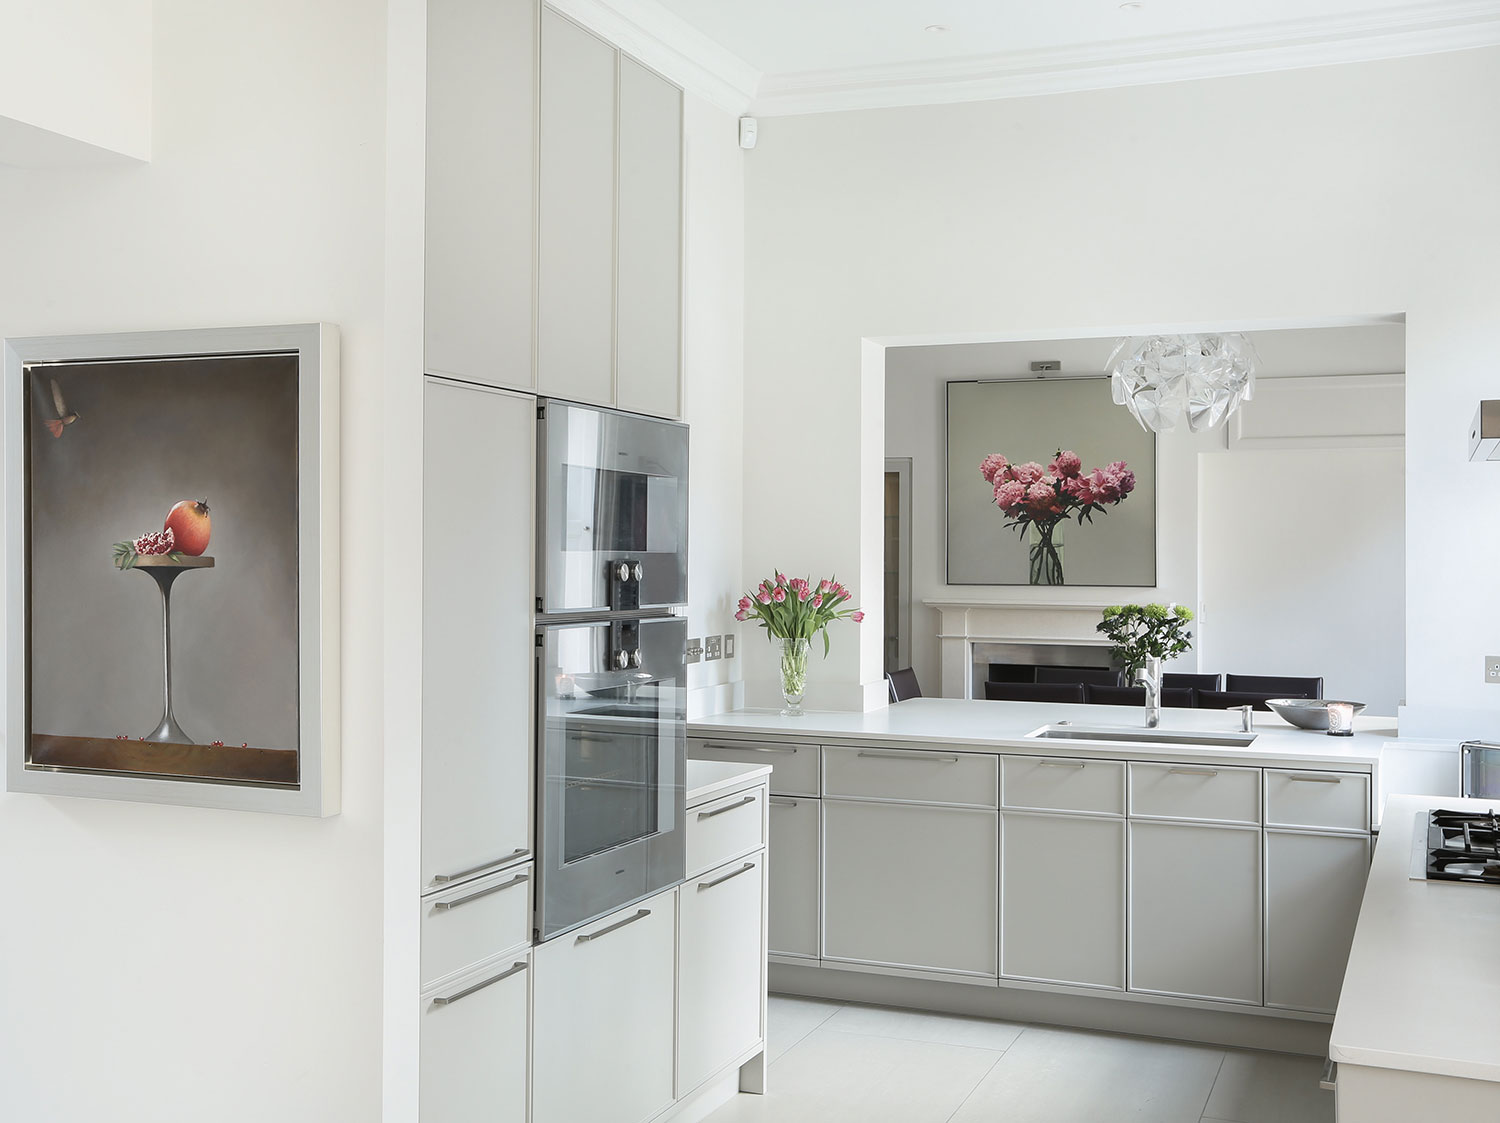 High end kitchen interior design, London